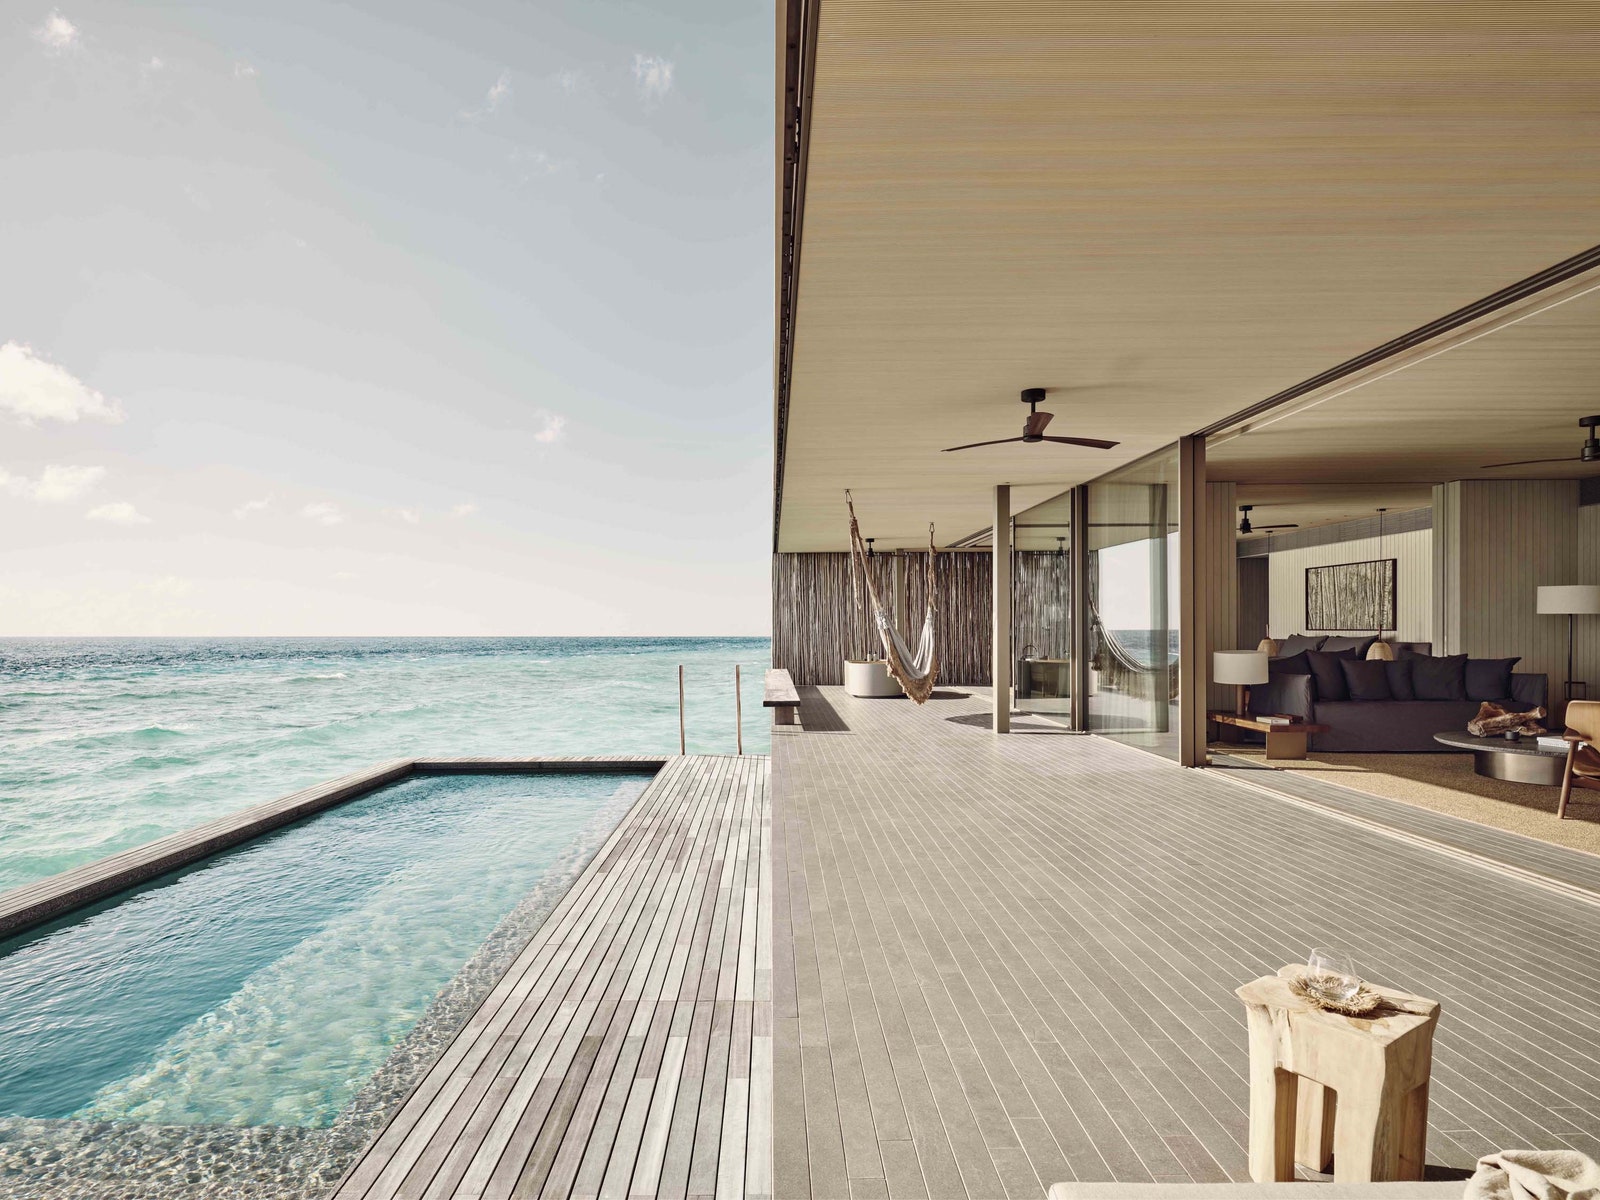 Модернизм на Мальдивах отель по проекту Марсиу Когана